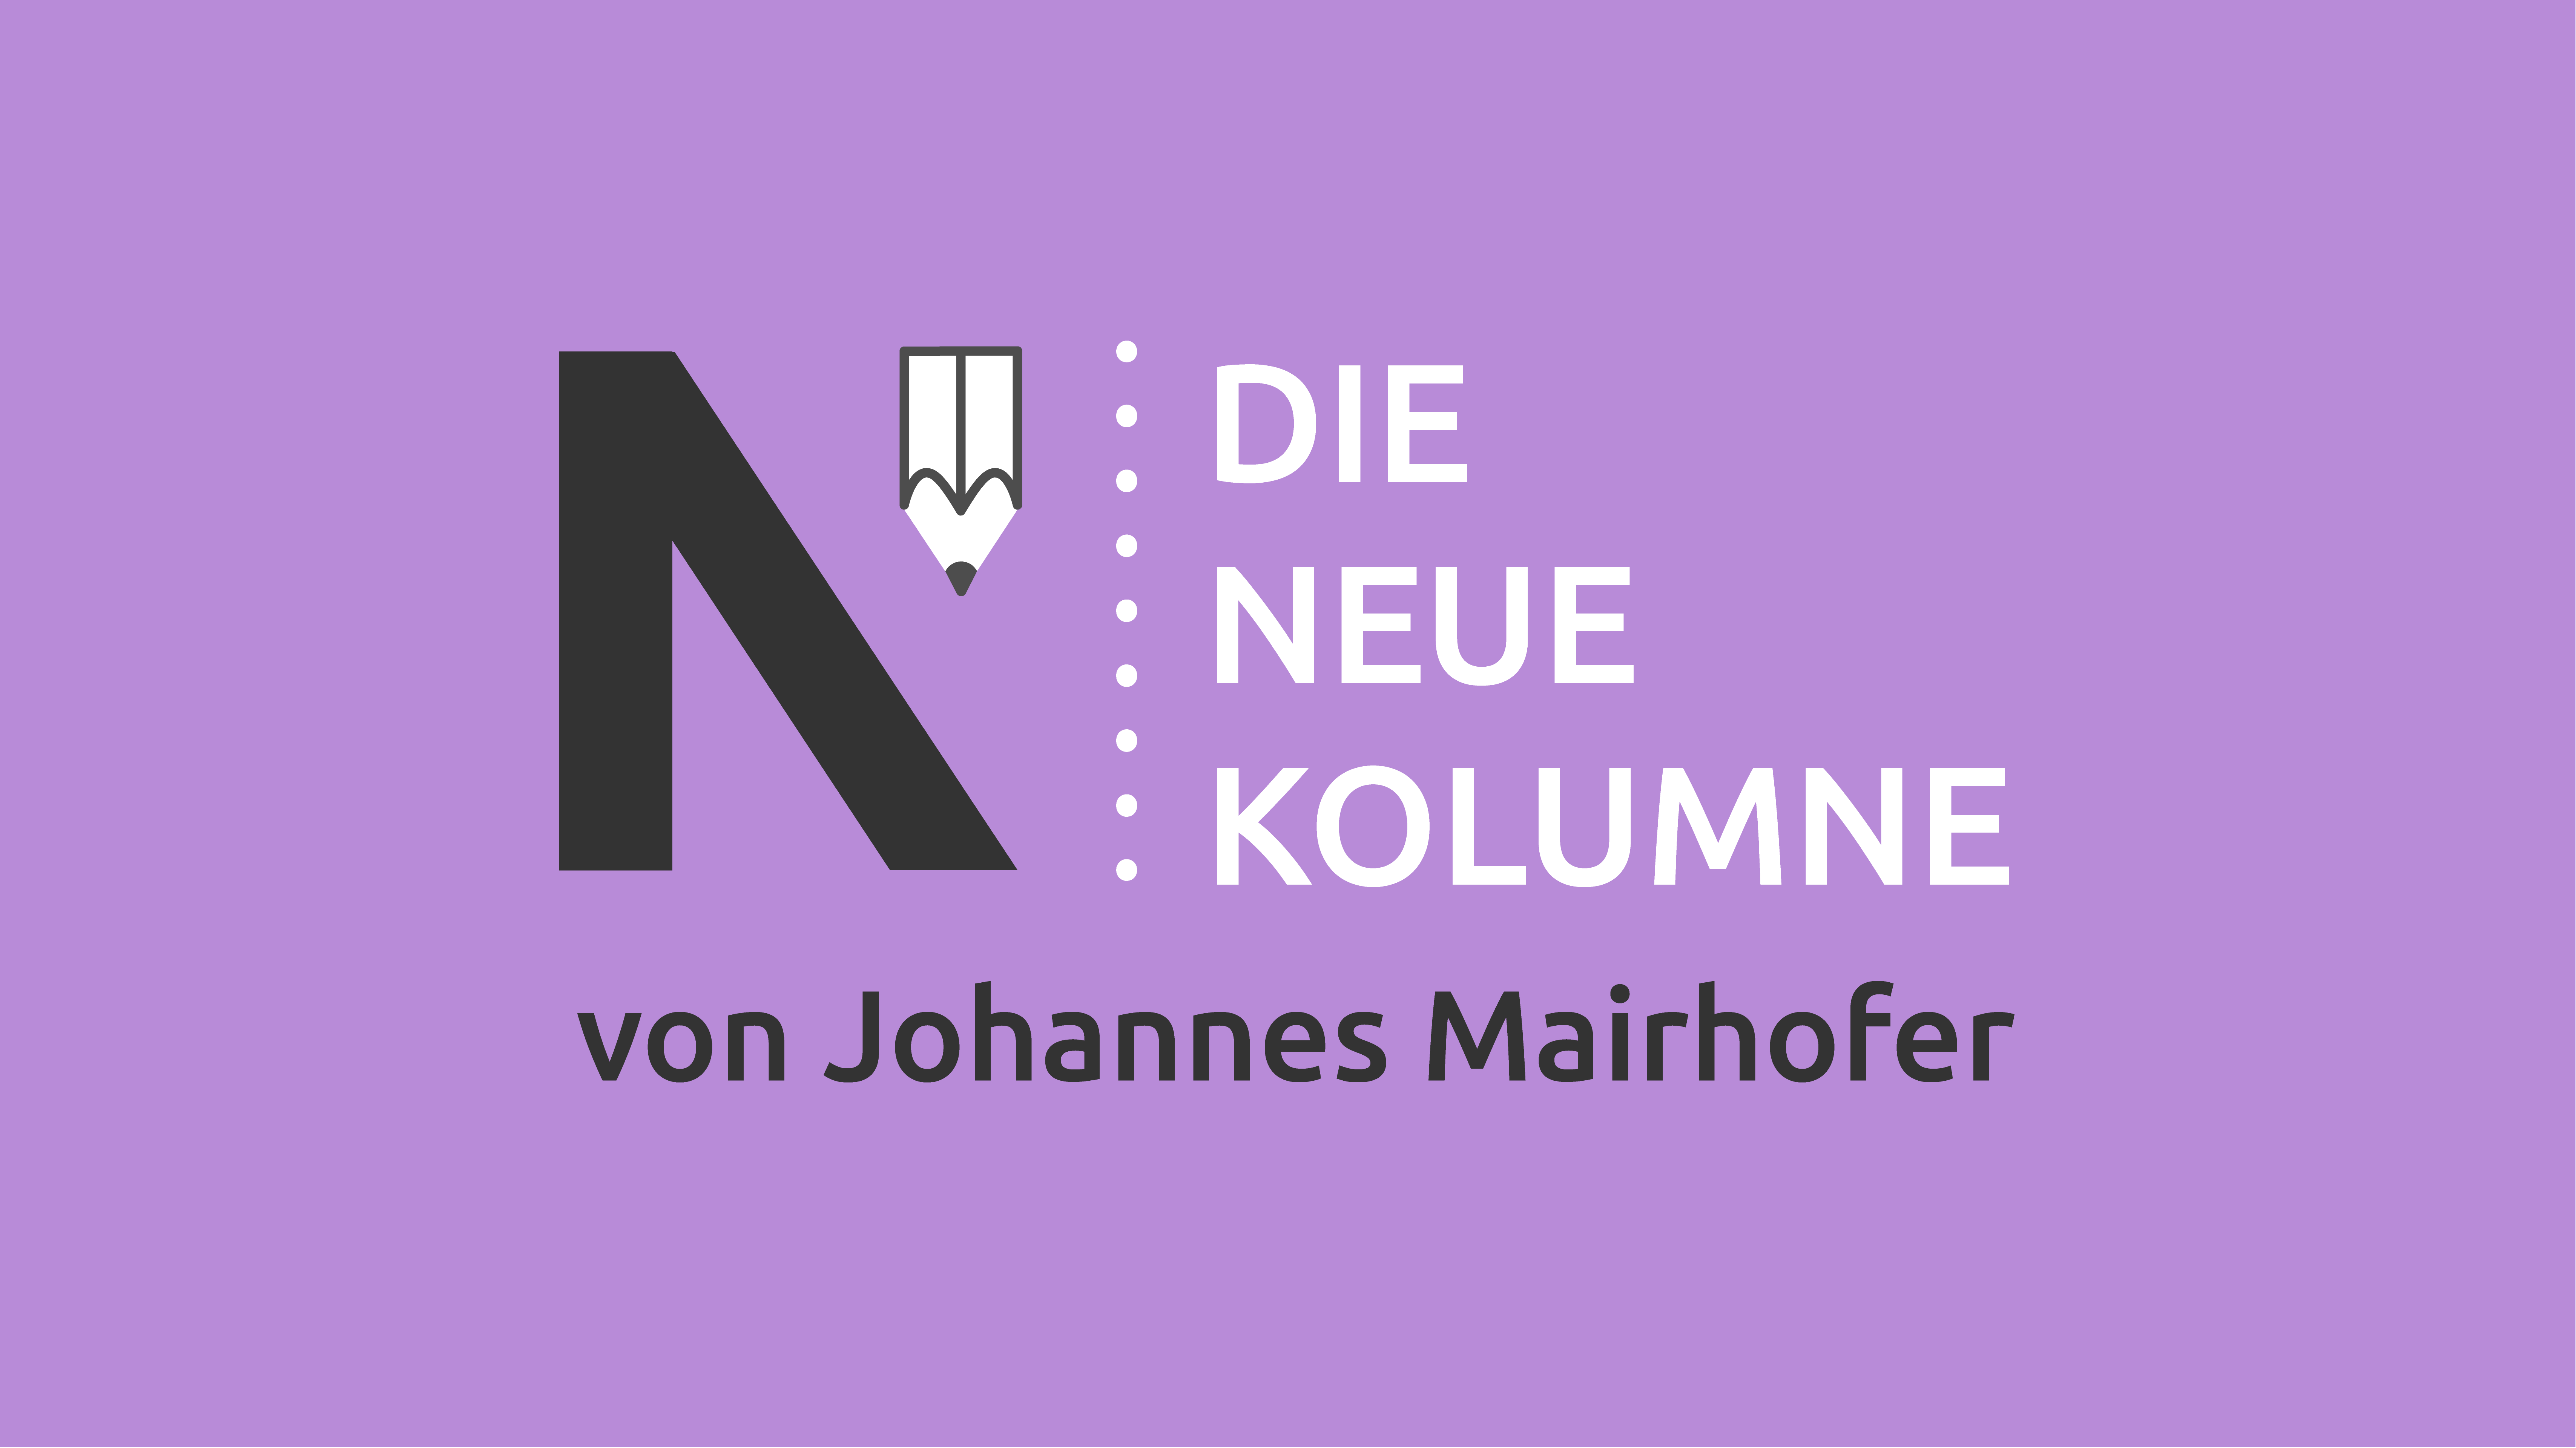 Das Logo von Die Neue Norm auf lilafarbenen Grund. Rechts steht: Die Neue Kolumne. Unten steht: Von Johannes Mairhofer.